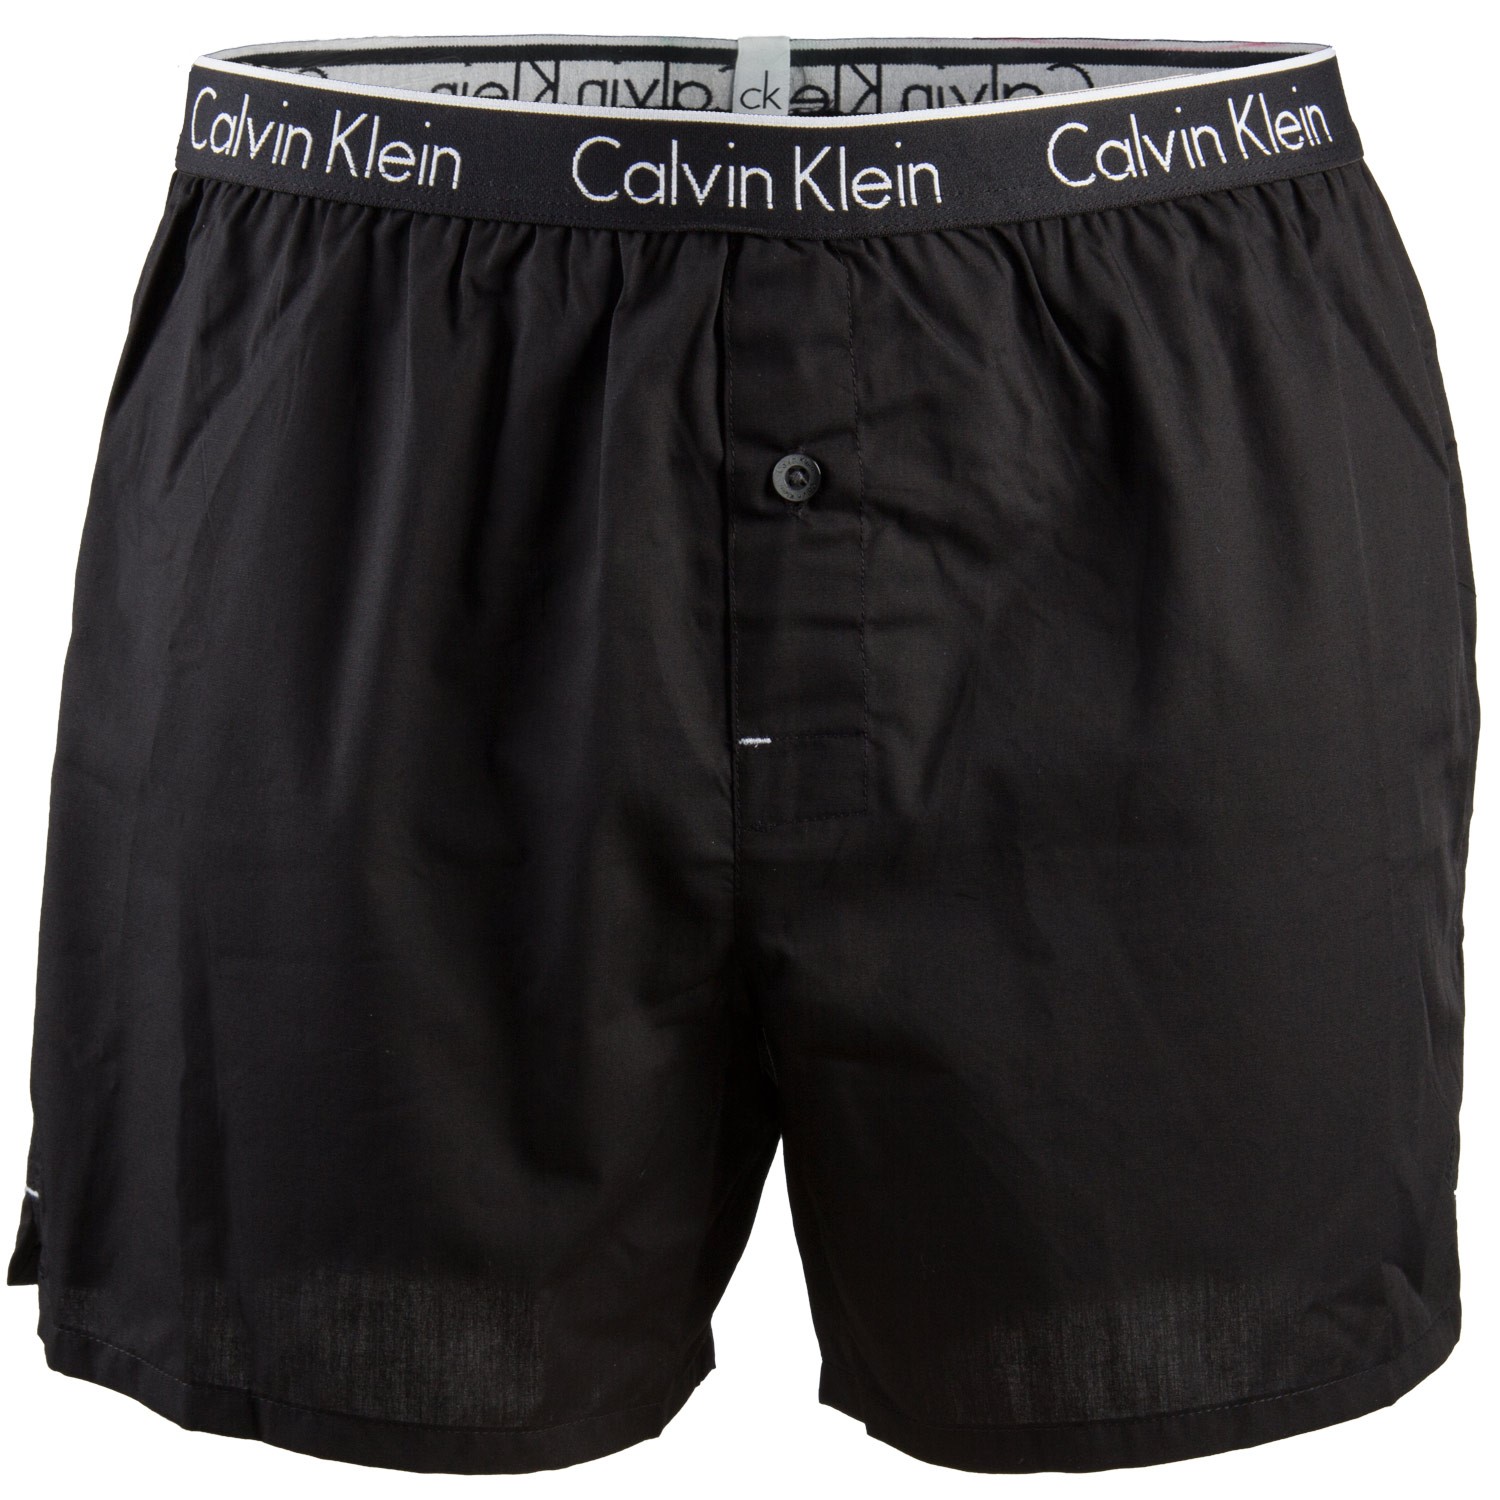 Calvin Klein CK One Cotton Skinny Jean boxer